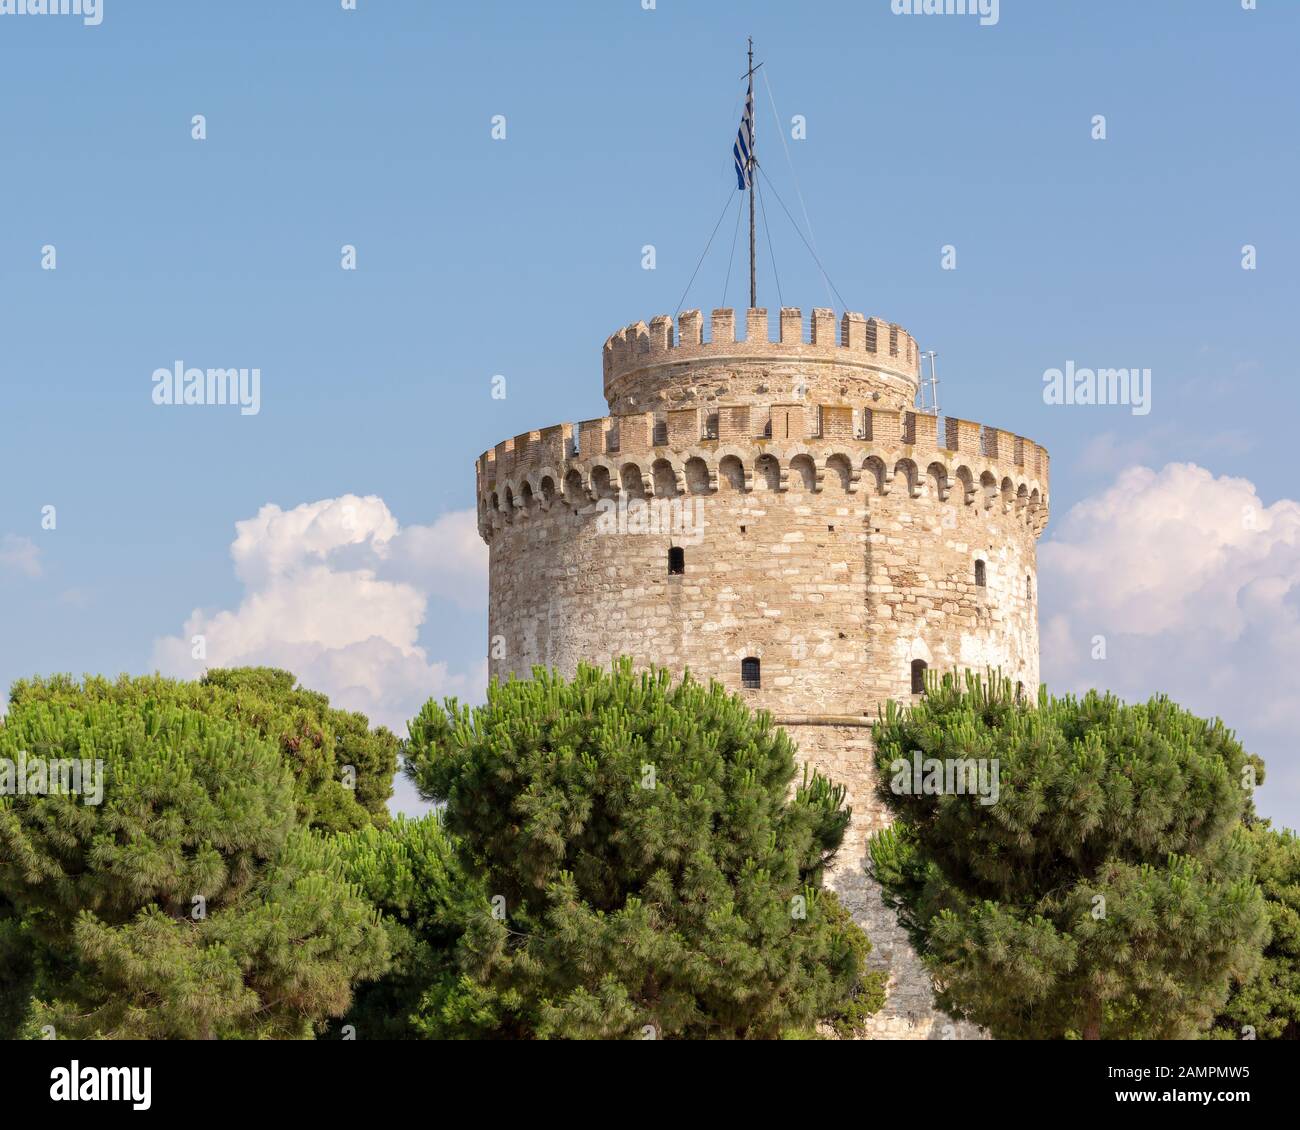 Der Weiße Turm wurde als Gefängnis während der Zeit des Osmanischen Reiches verwendet. Heute ist es ein Museum und das Wahrzeichen der Stadt. Stockfoto